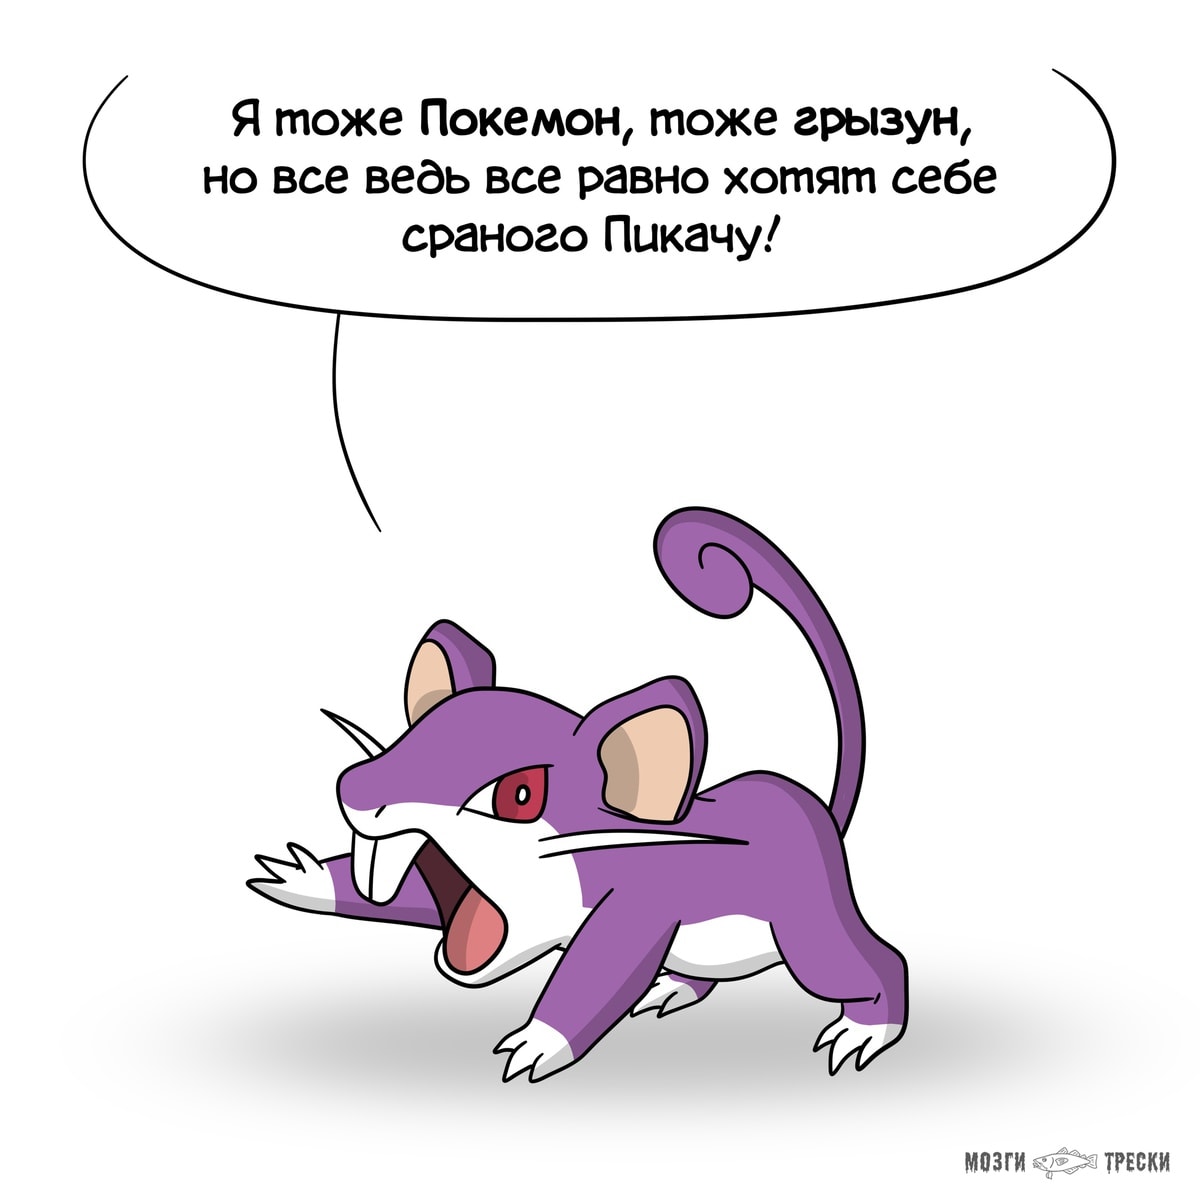 Автор комиксов «Мозги трески» представил, какие проблемы волнуют известных мультяшных крыс и мышей 33